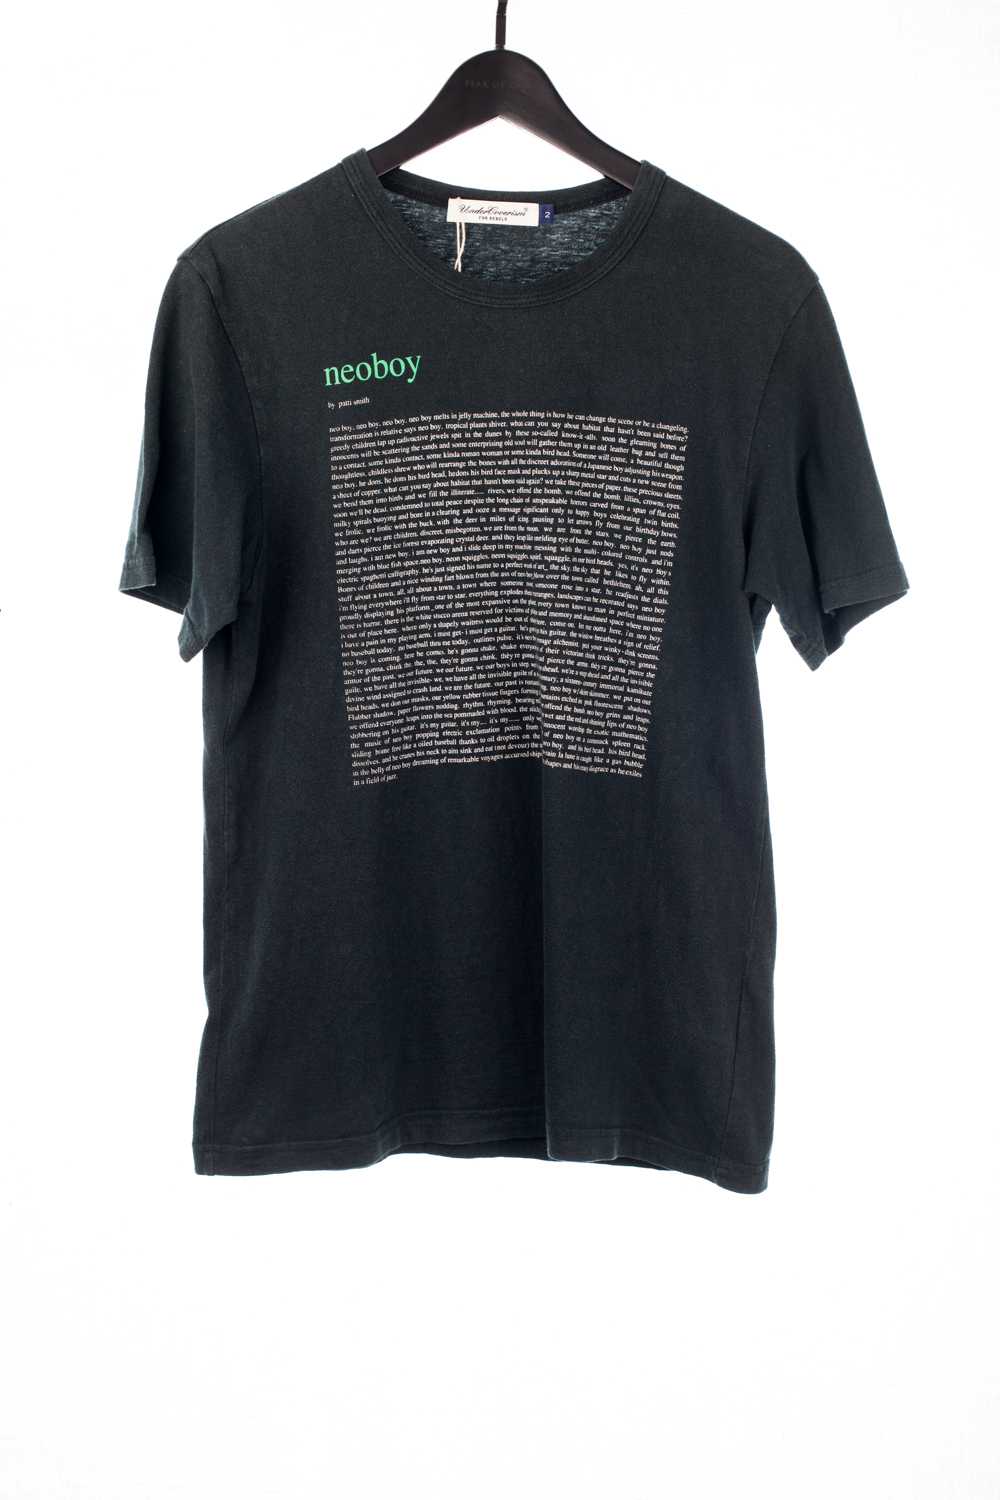 Patti Smith “Neoboy” Shirt - image 1